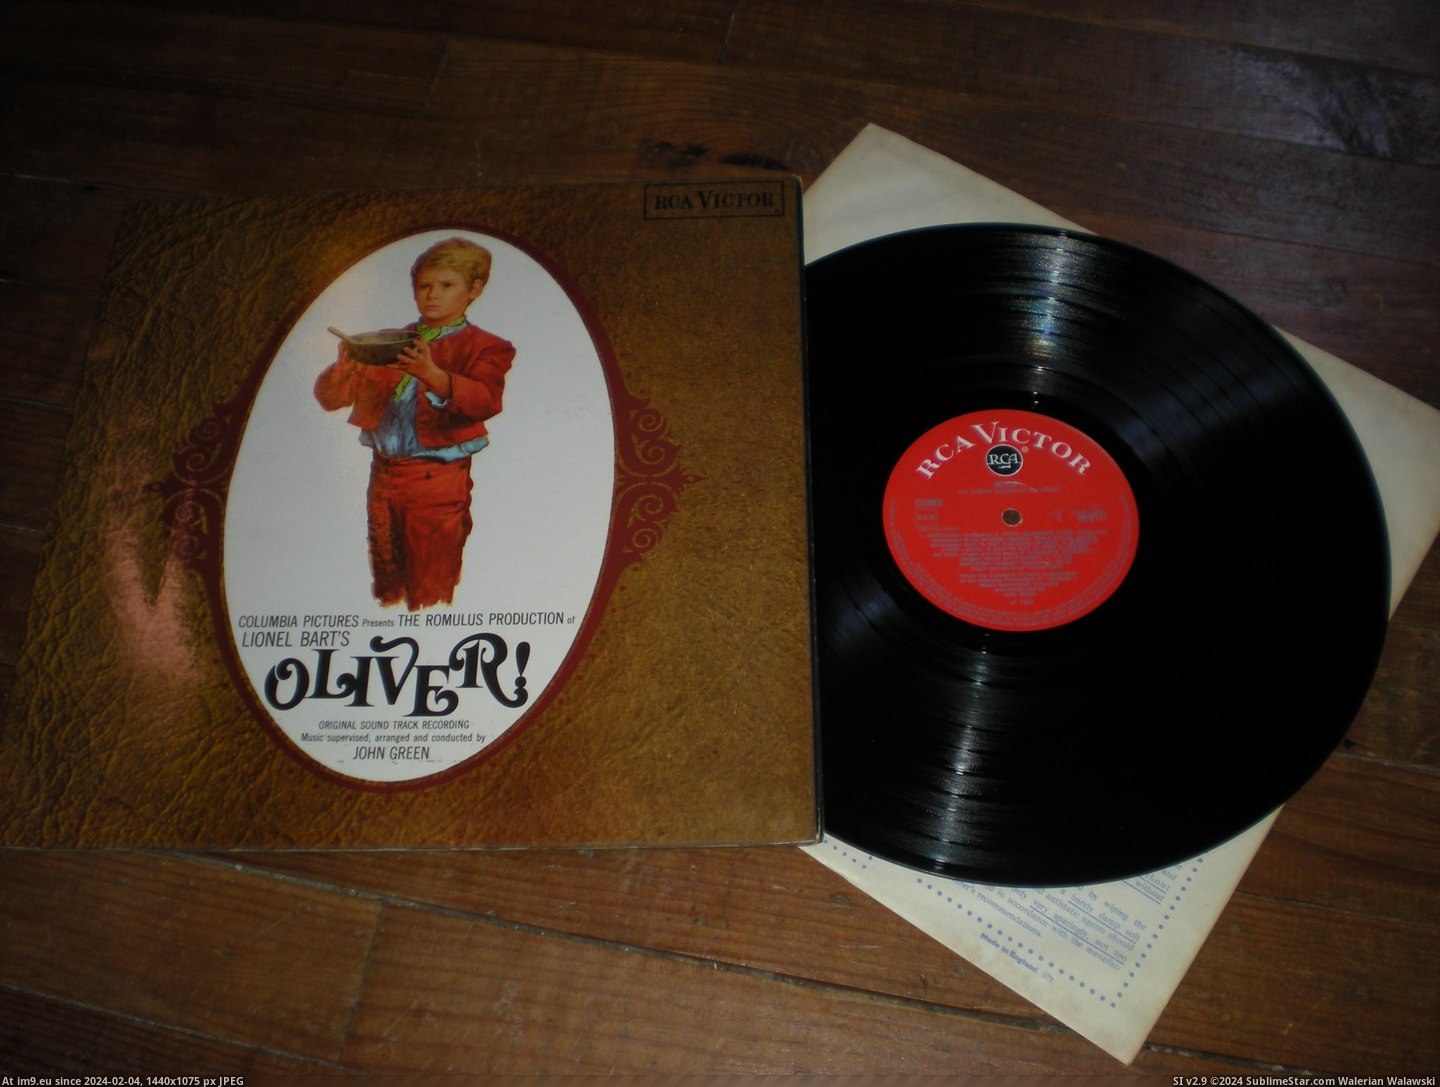  #Oliver  Oliver 1 Pic. (Изображение из альбом new 1))